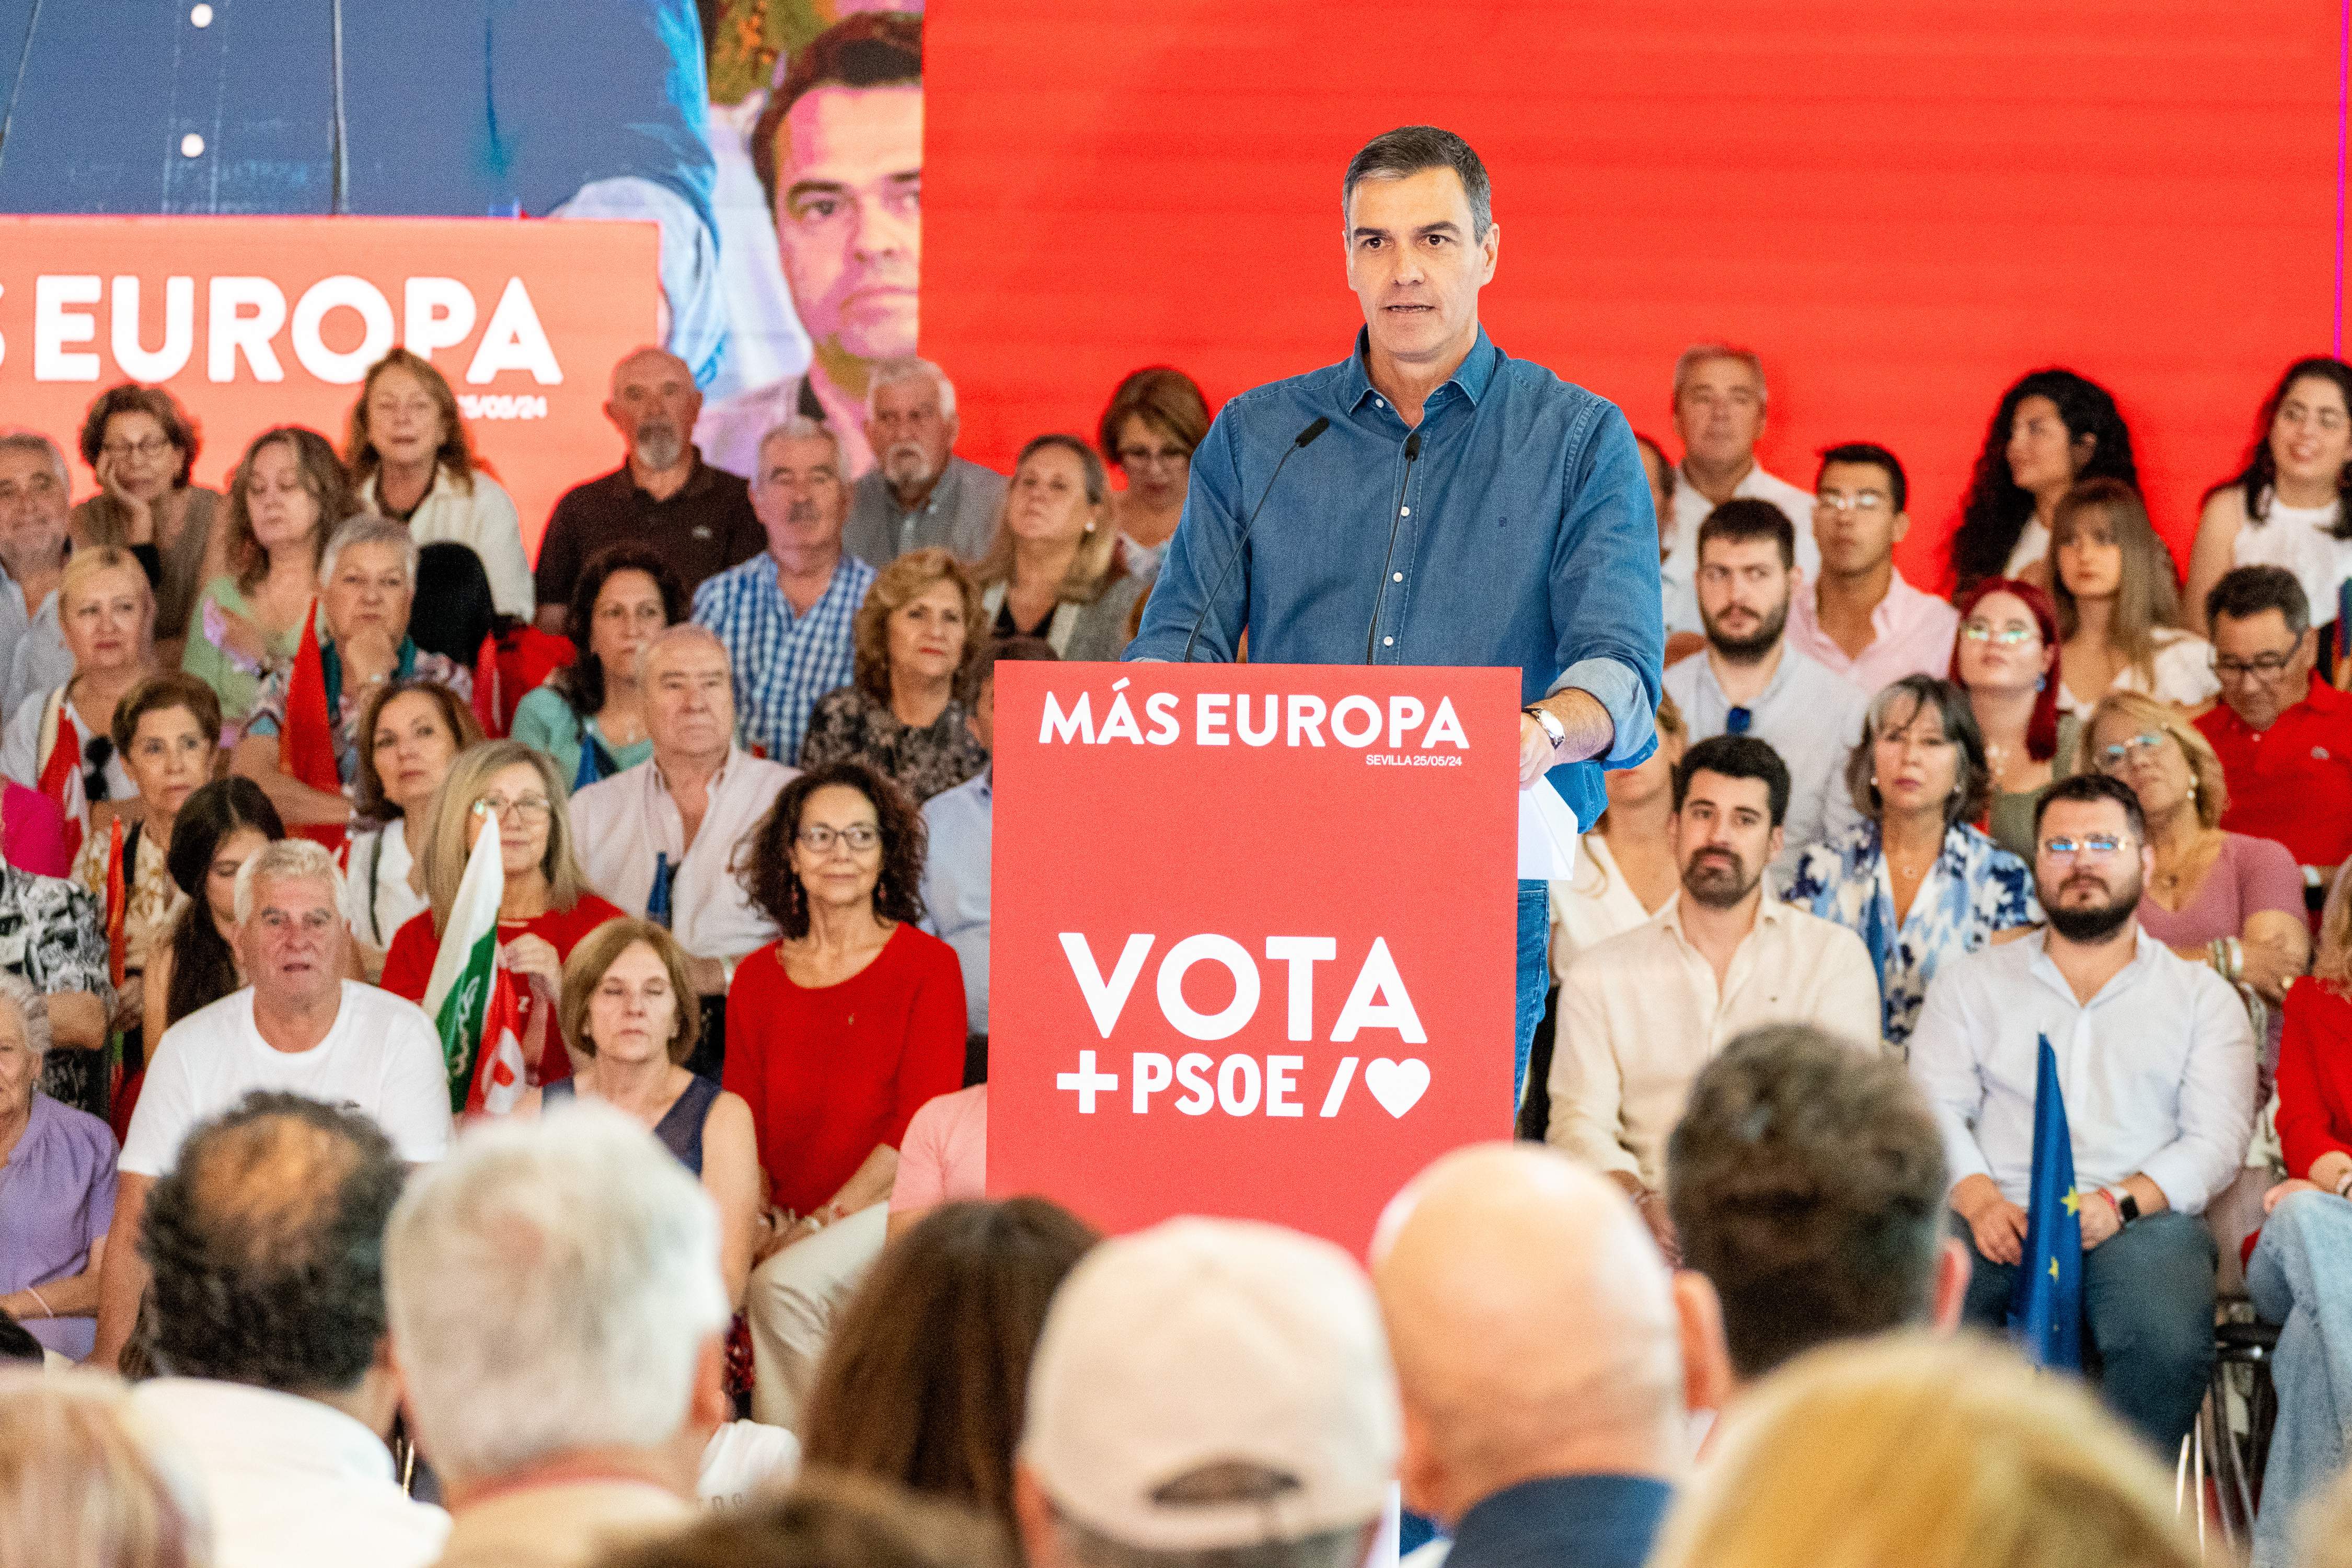 Sánchez avisa que votar al PP es dar un "voto indirecto" a la ultraderecha